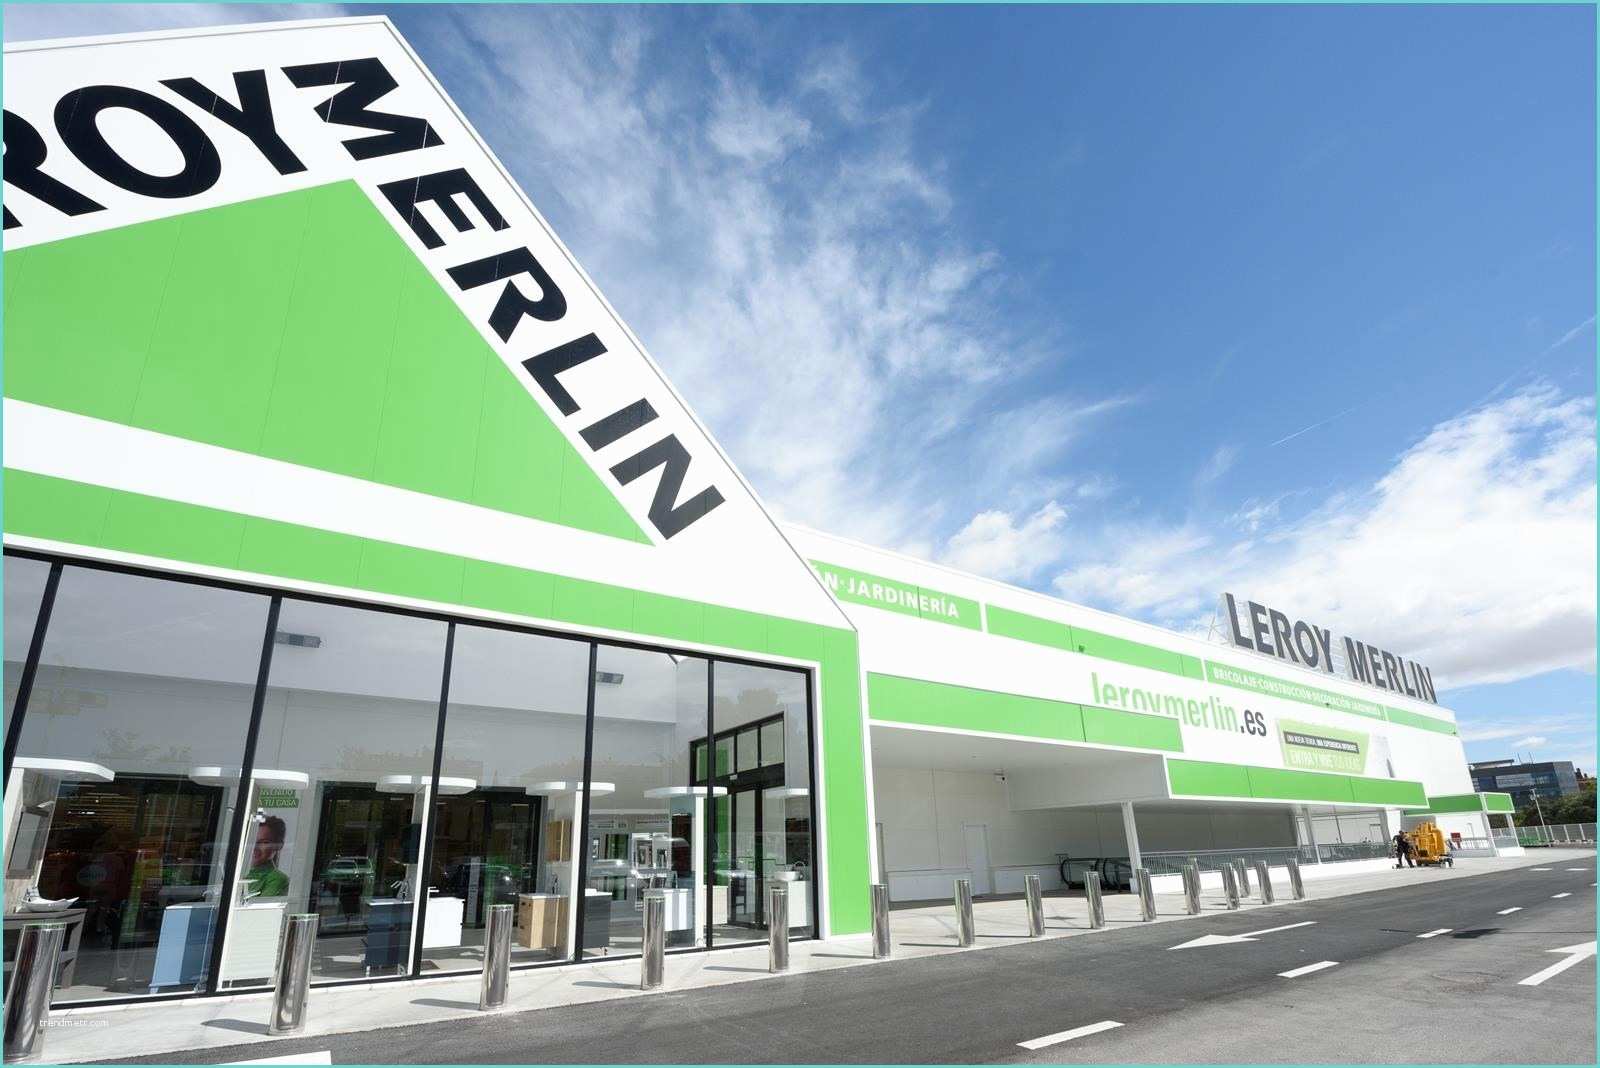 Hidrofor Leroy Merlin 2017 La Firma Creará 100 Nuevos Empleos Para Su Nueva Tienda En